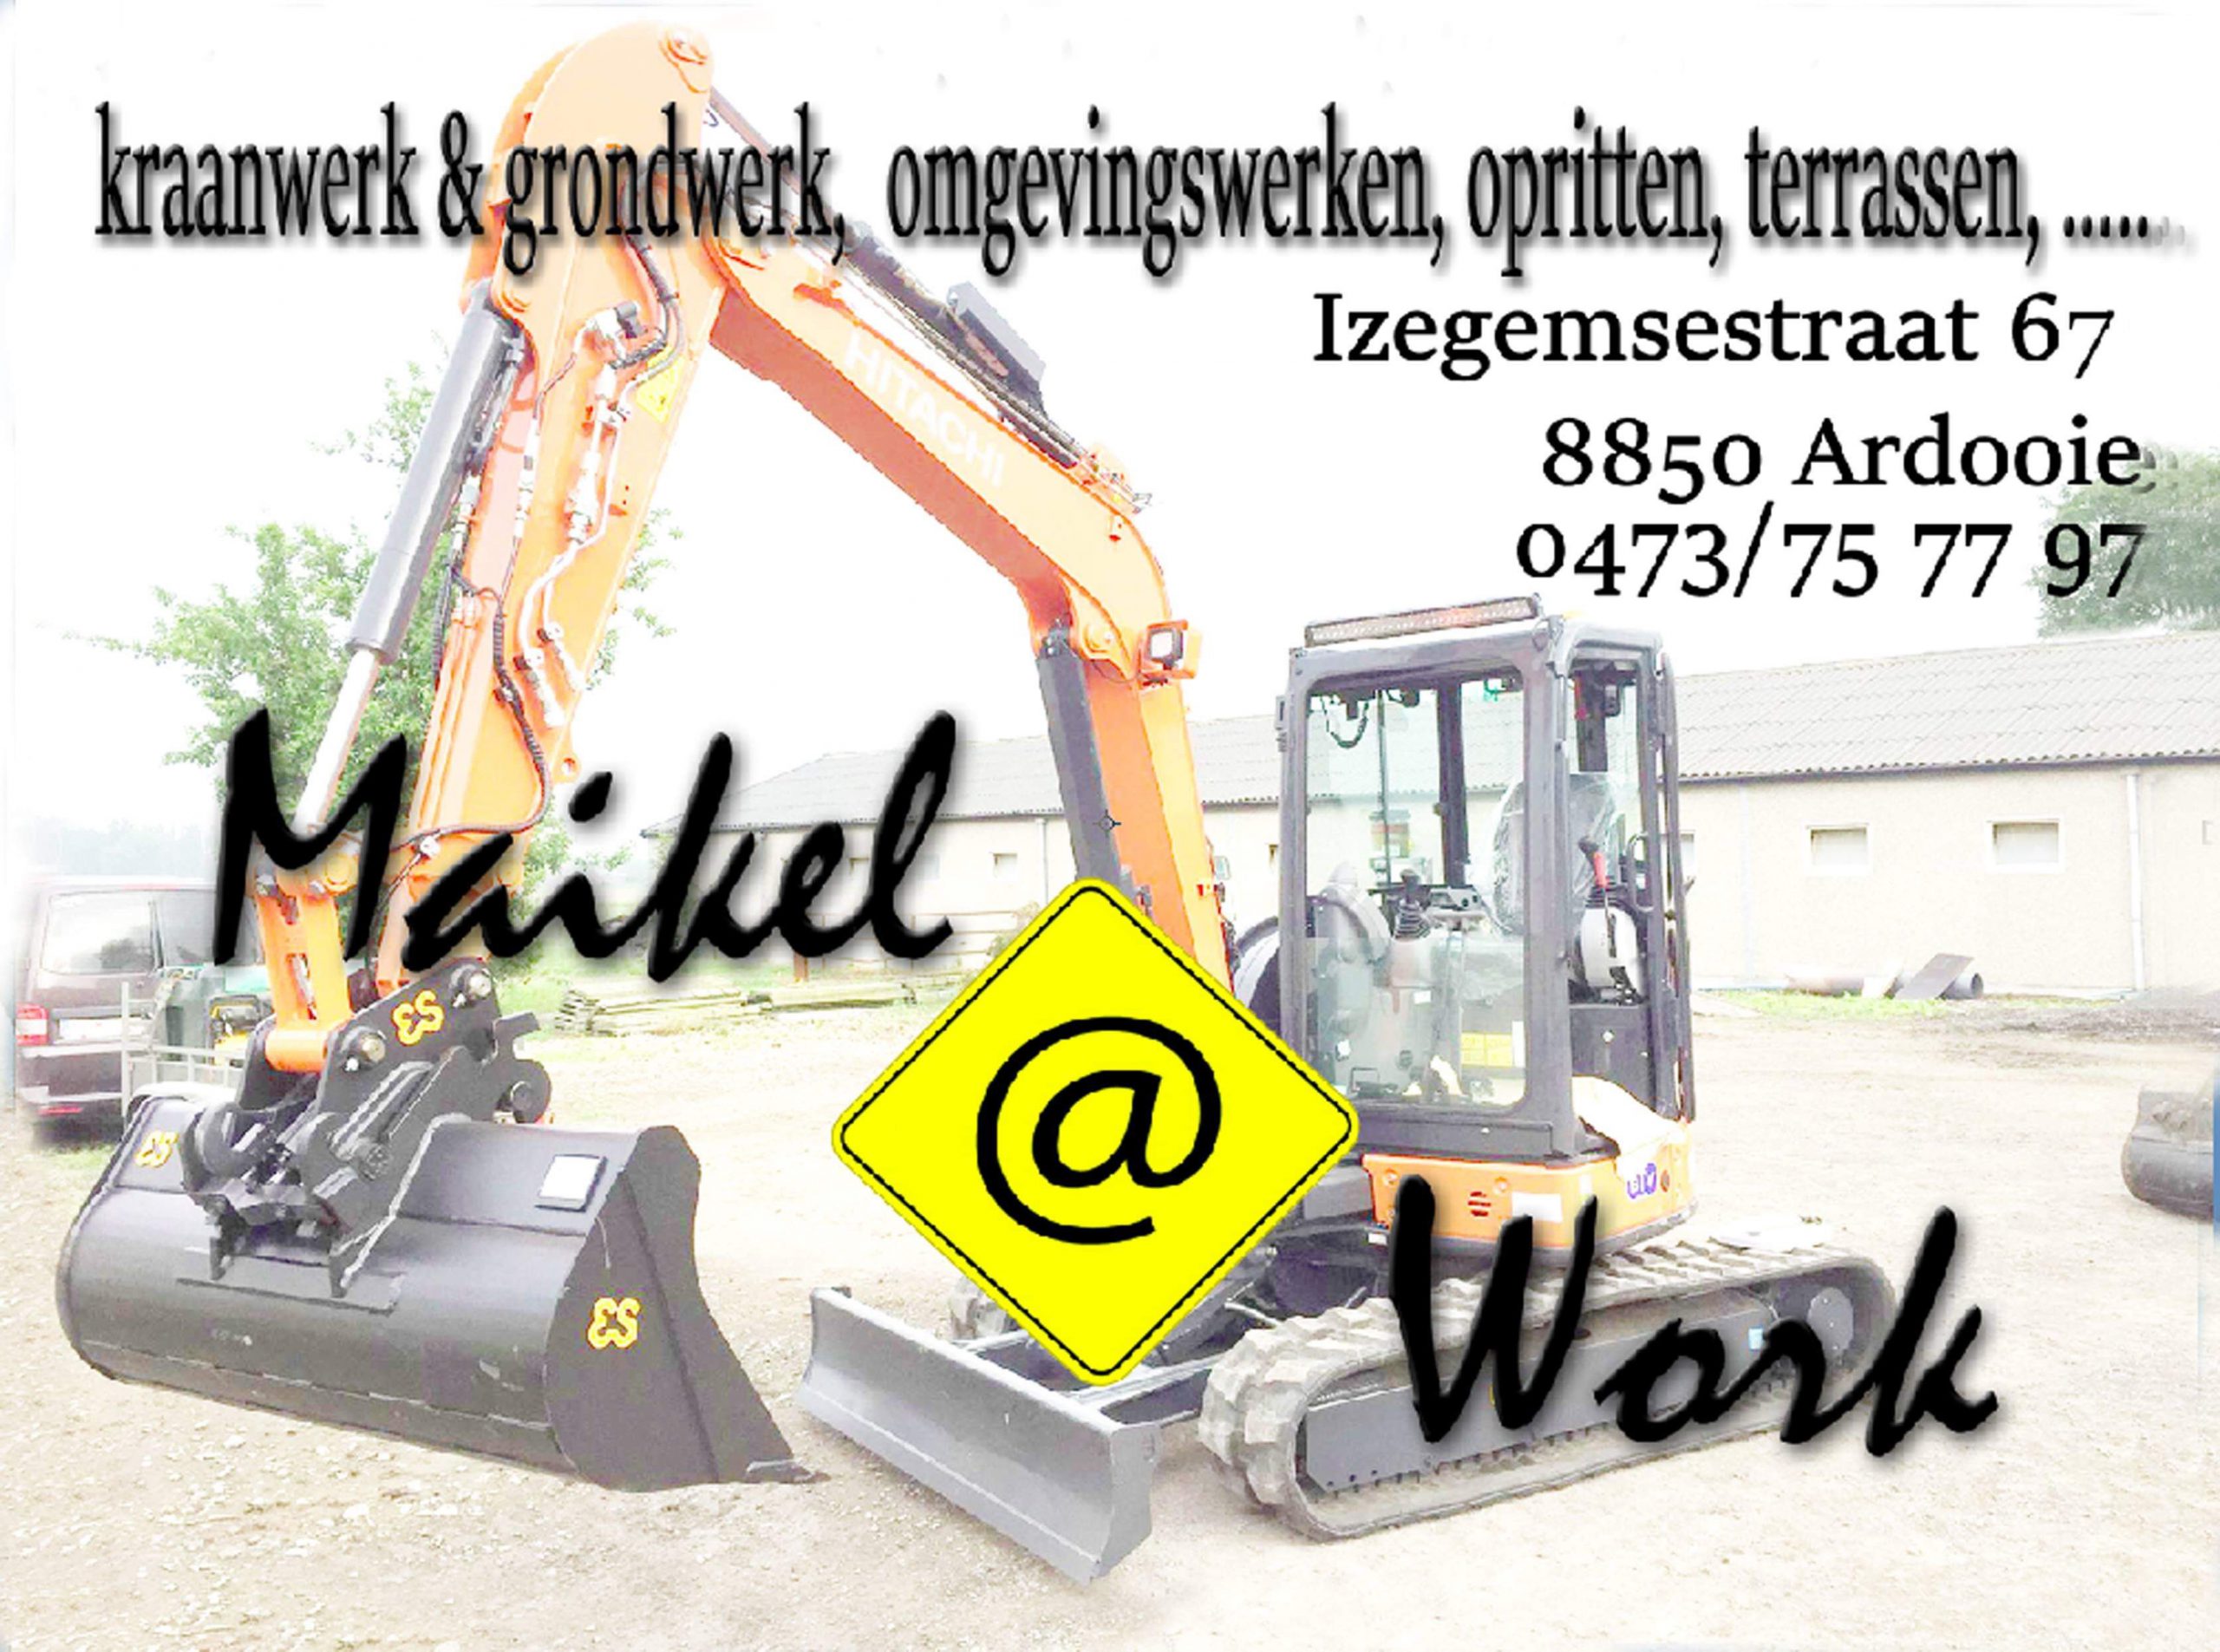 Maikel @ work sponsor